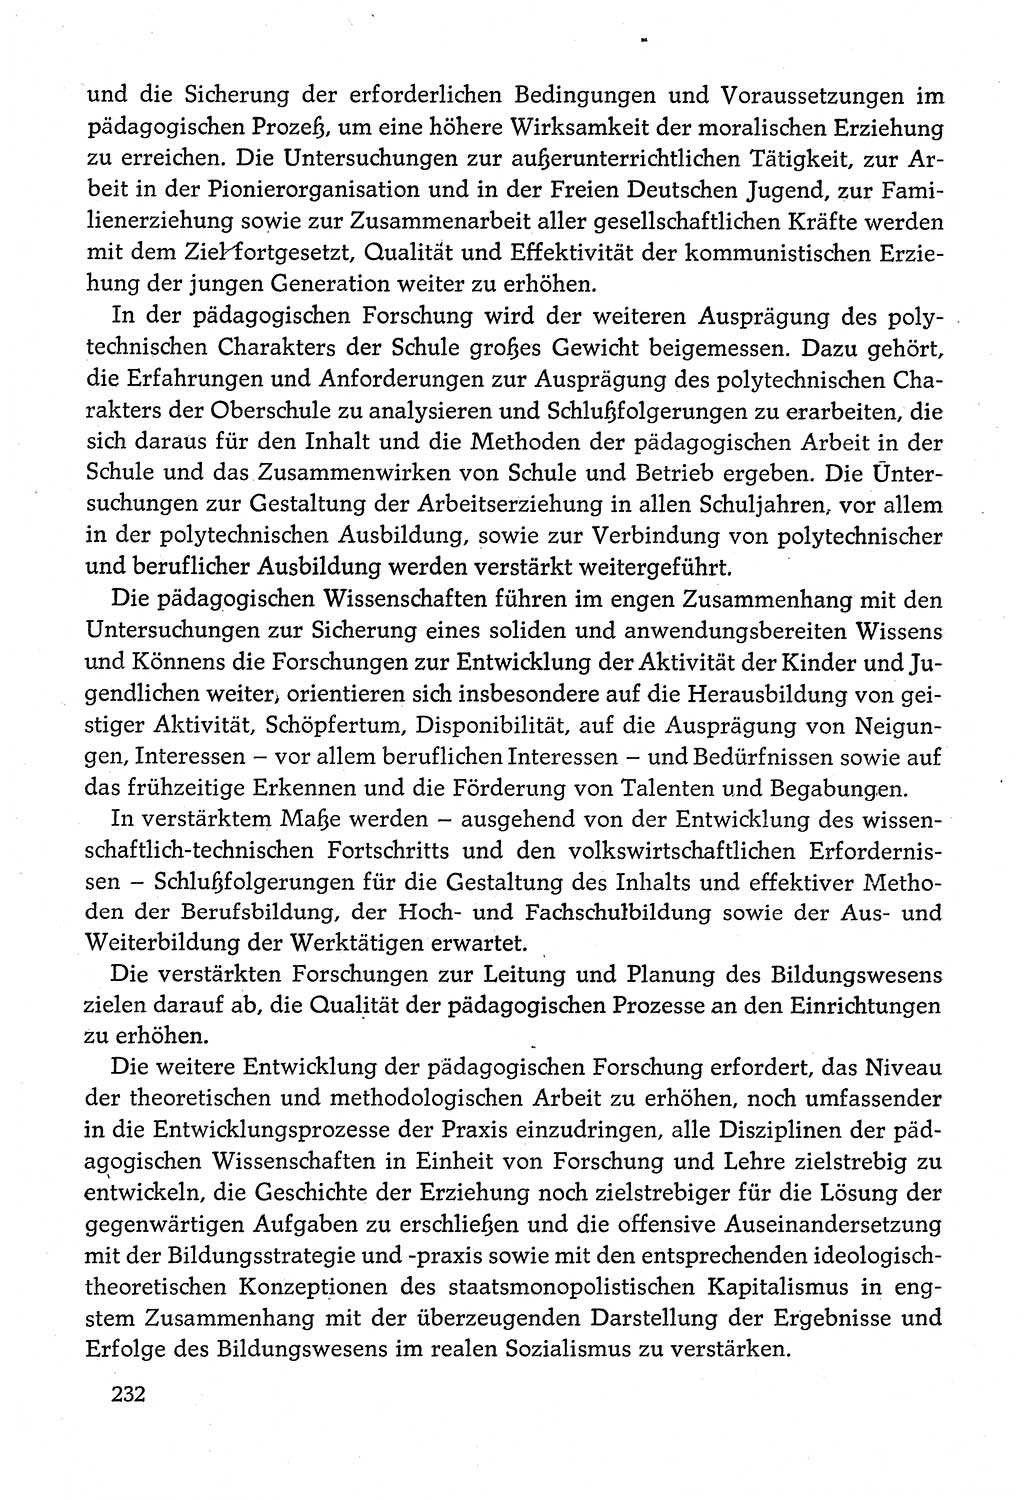 Dokumente der Sozialistischen Einheitspartei Deutschlands (SED) [Deutsche Demokratische Republik (DDR)] 1980-1981, Seite 232 (Dok. SED DDR 1980-1981, S. 232)